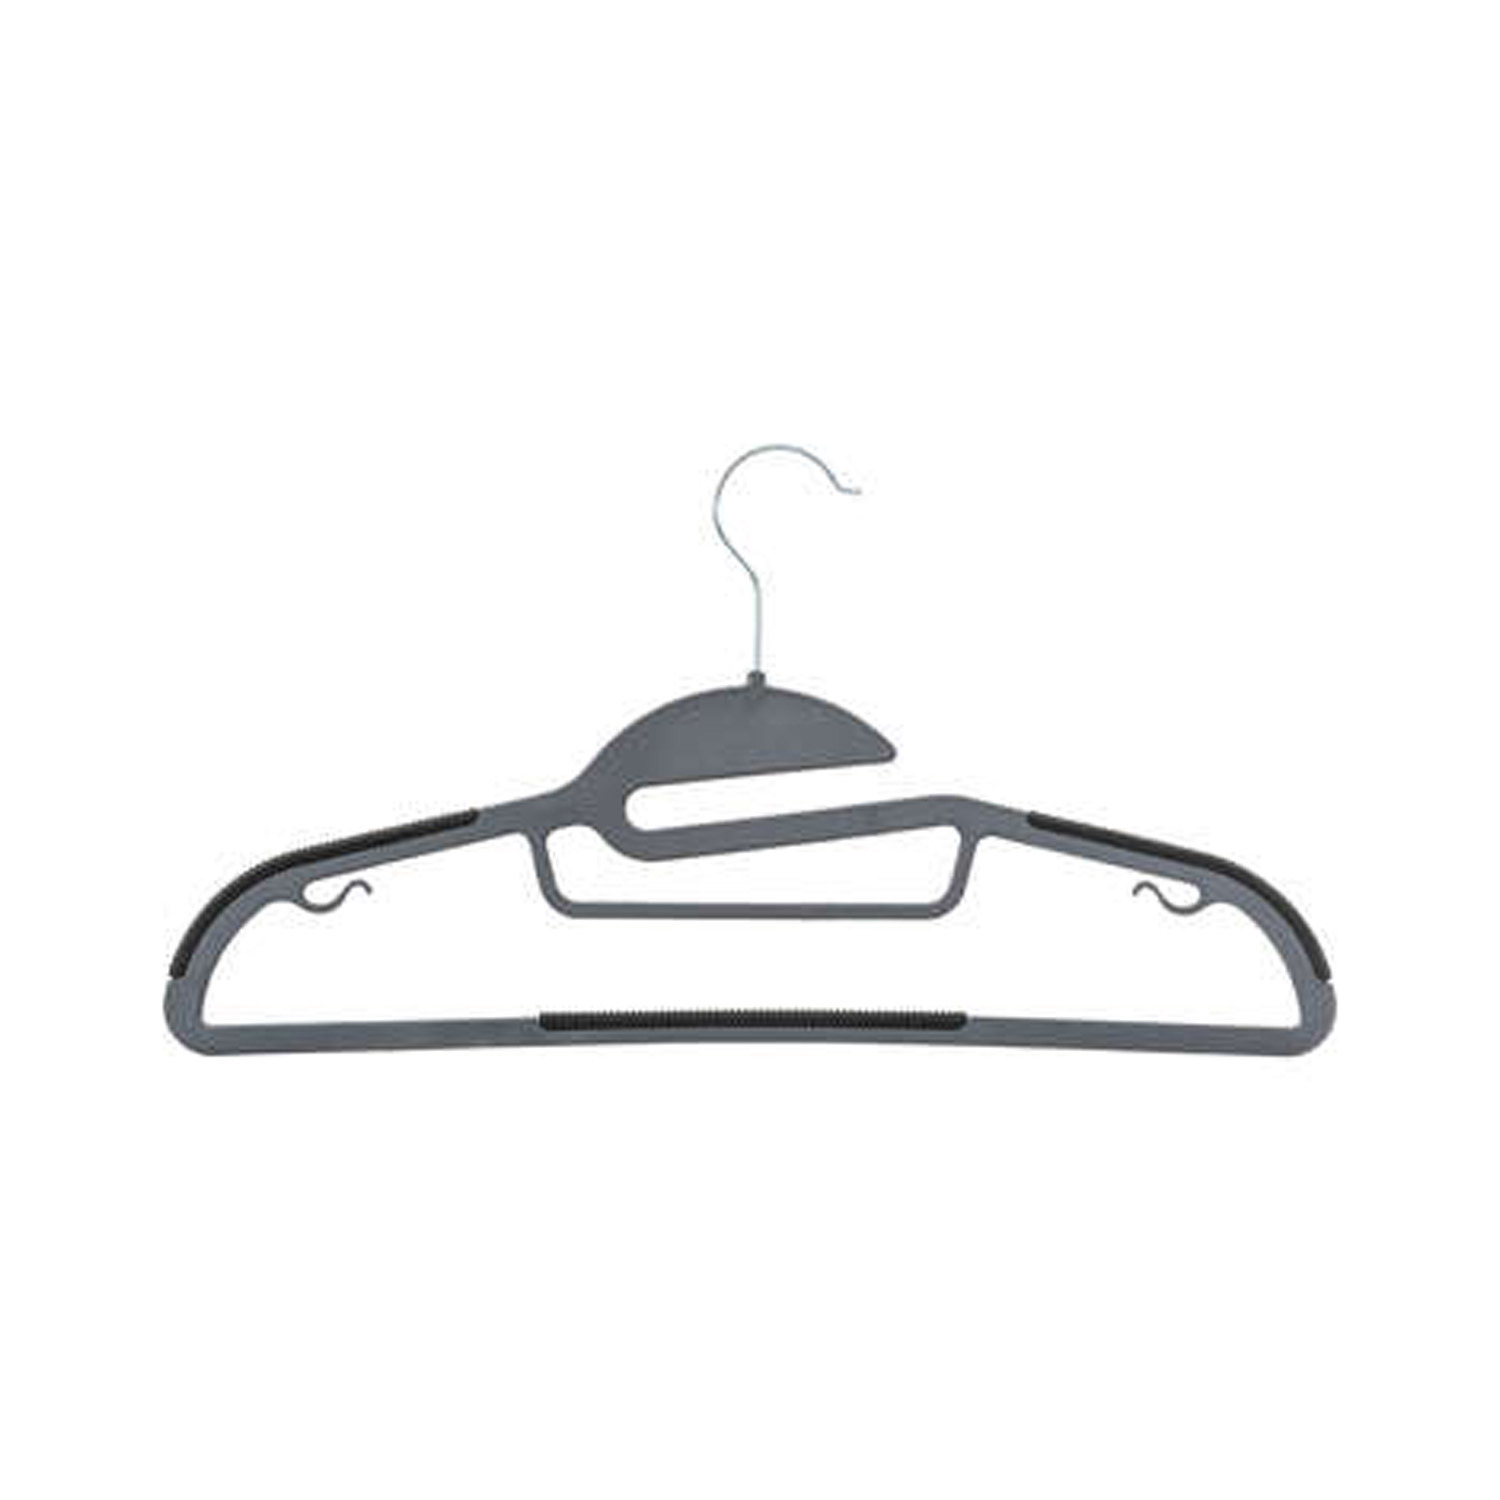 5five Kledinghangers set - 8 stuks - grijs/zwart- kunststof - 41x22 cm - kledingkast hangers/kleerhangers -